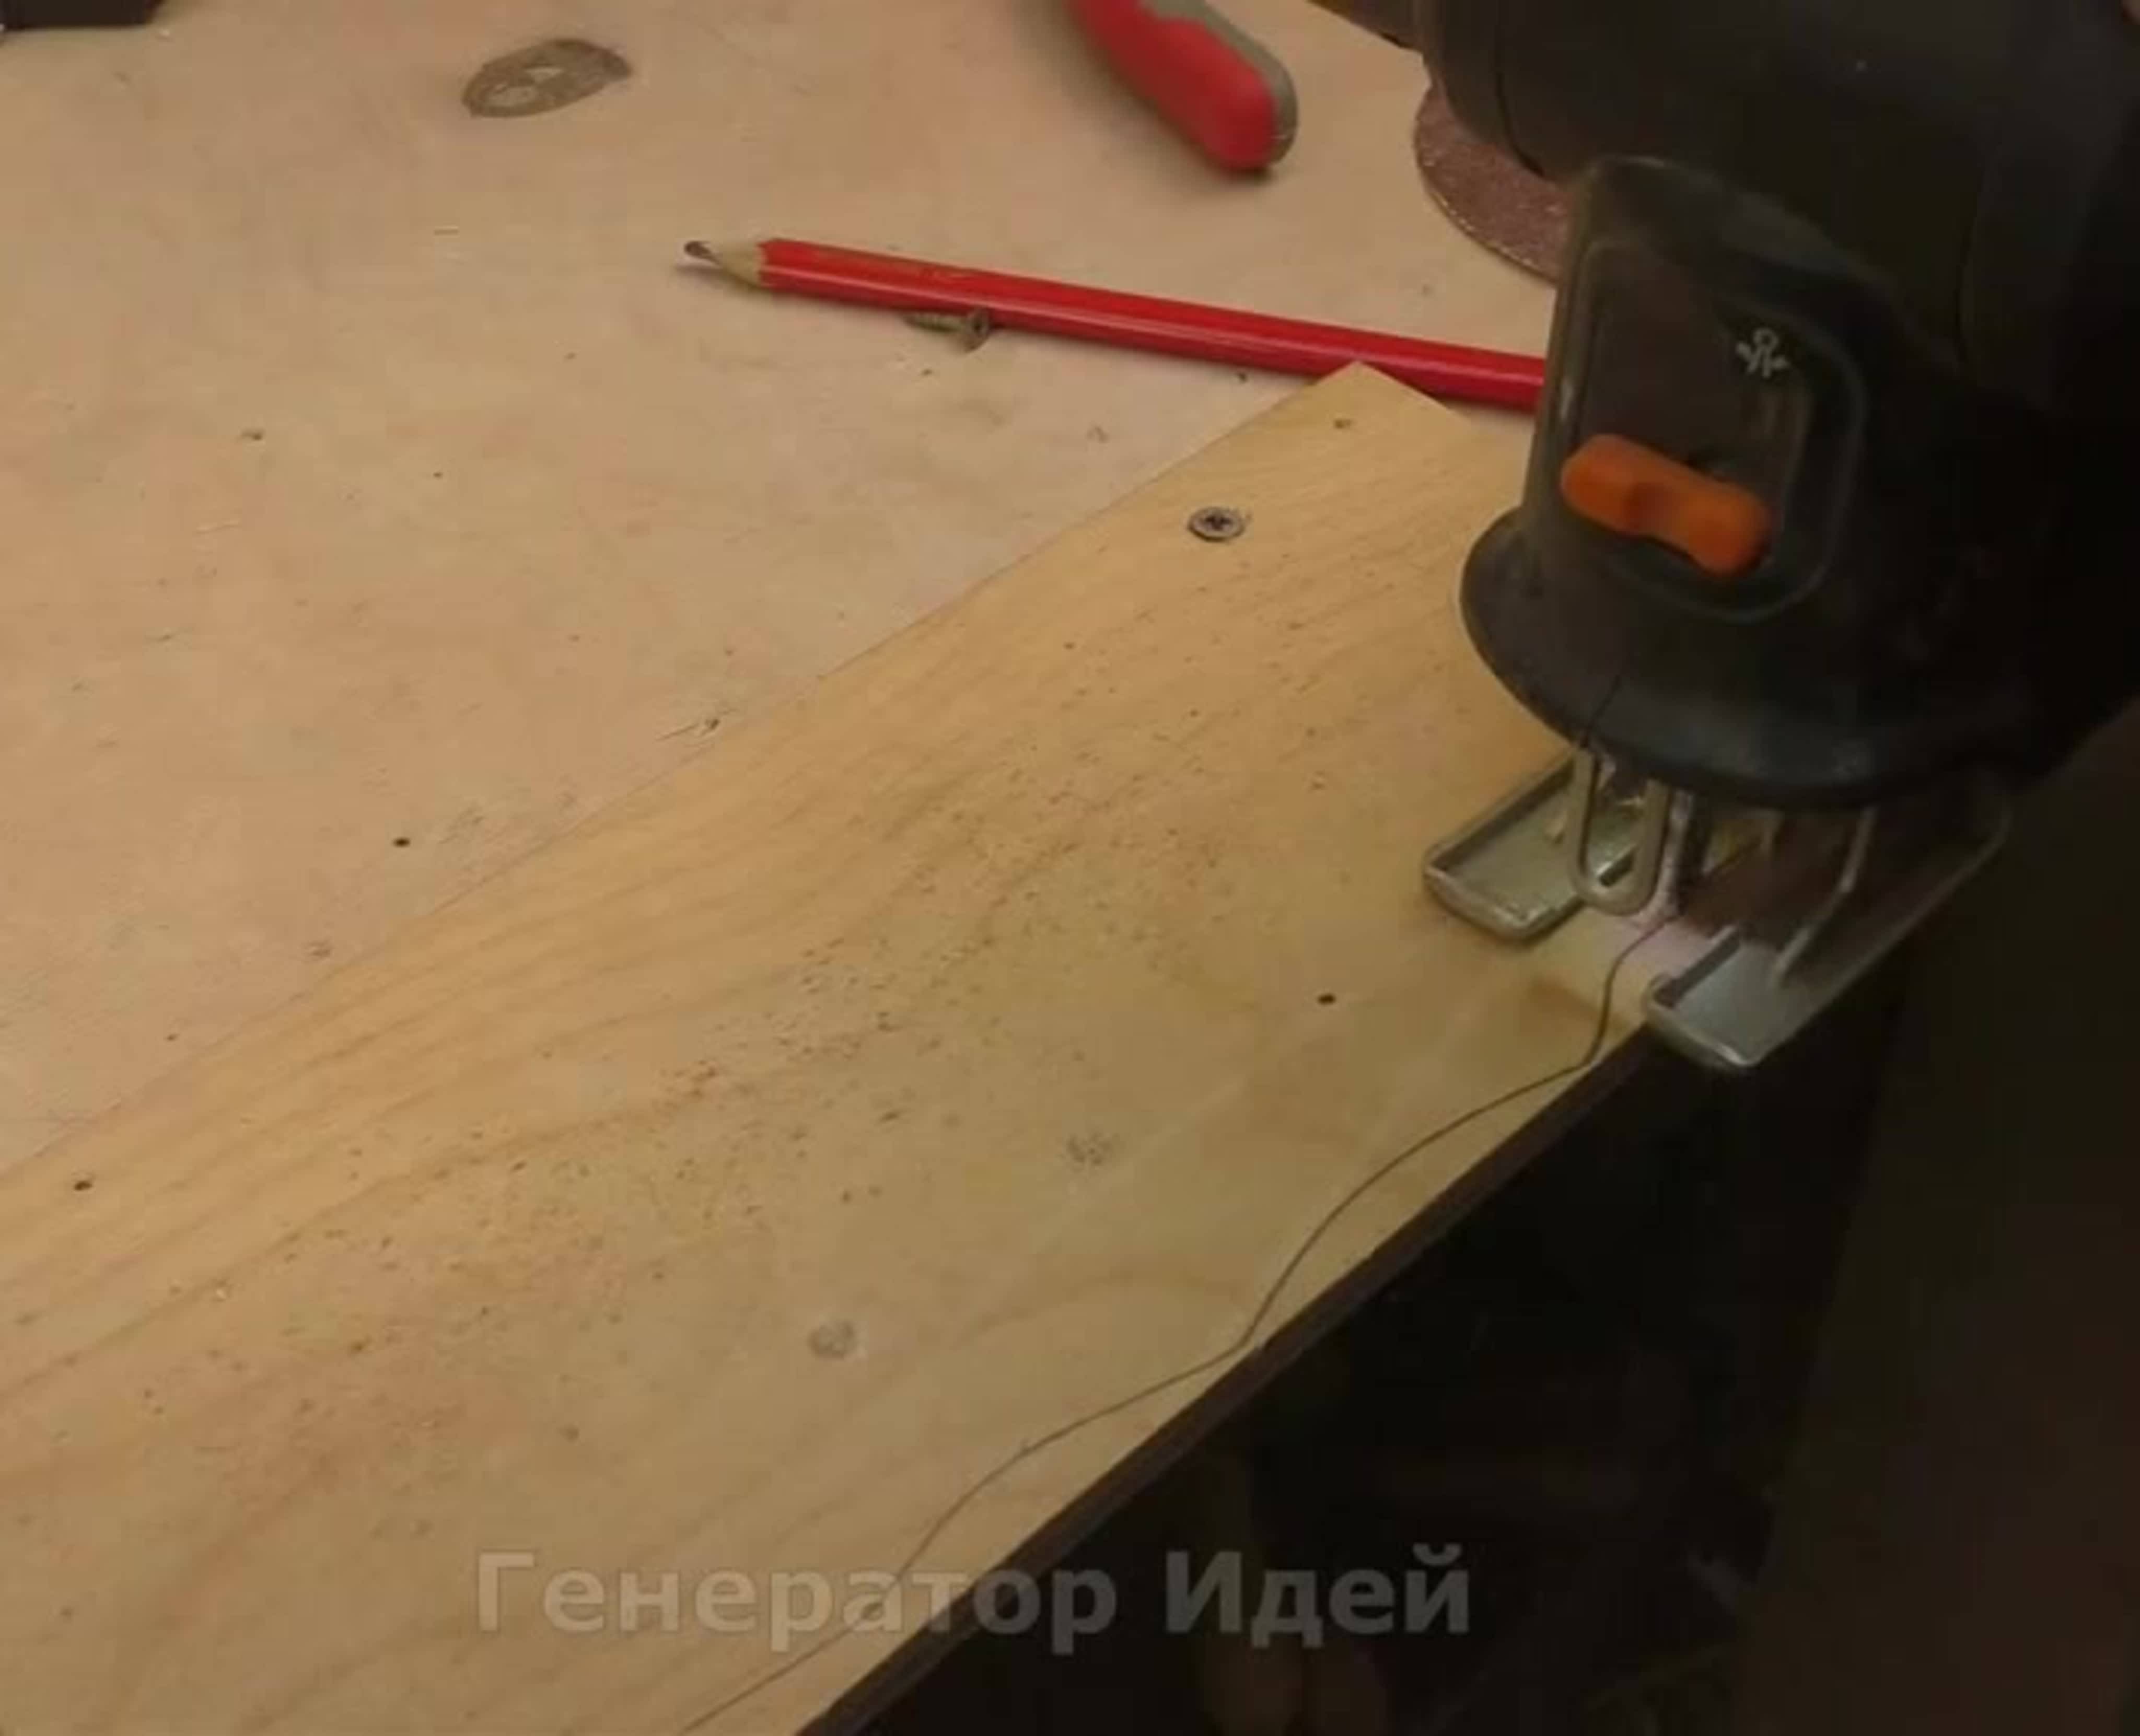 Как распилить лдсп без сколов в домашних условиях с помощью ручных электроинструментов николай пономарев, блог малоэтажная страна